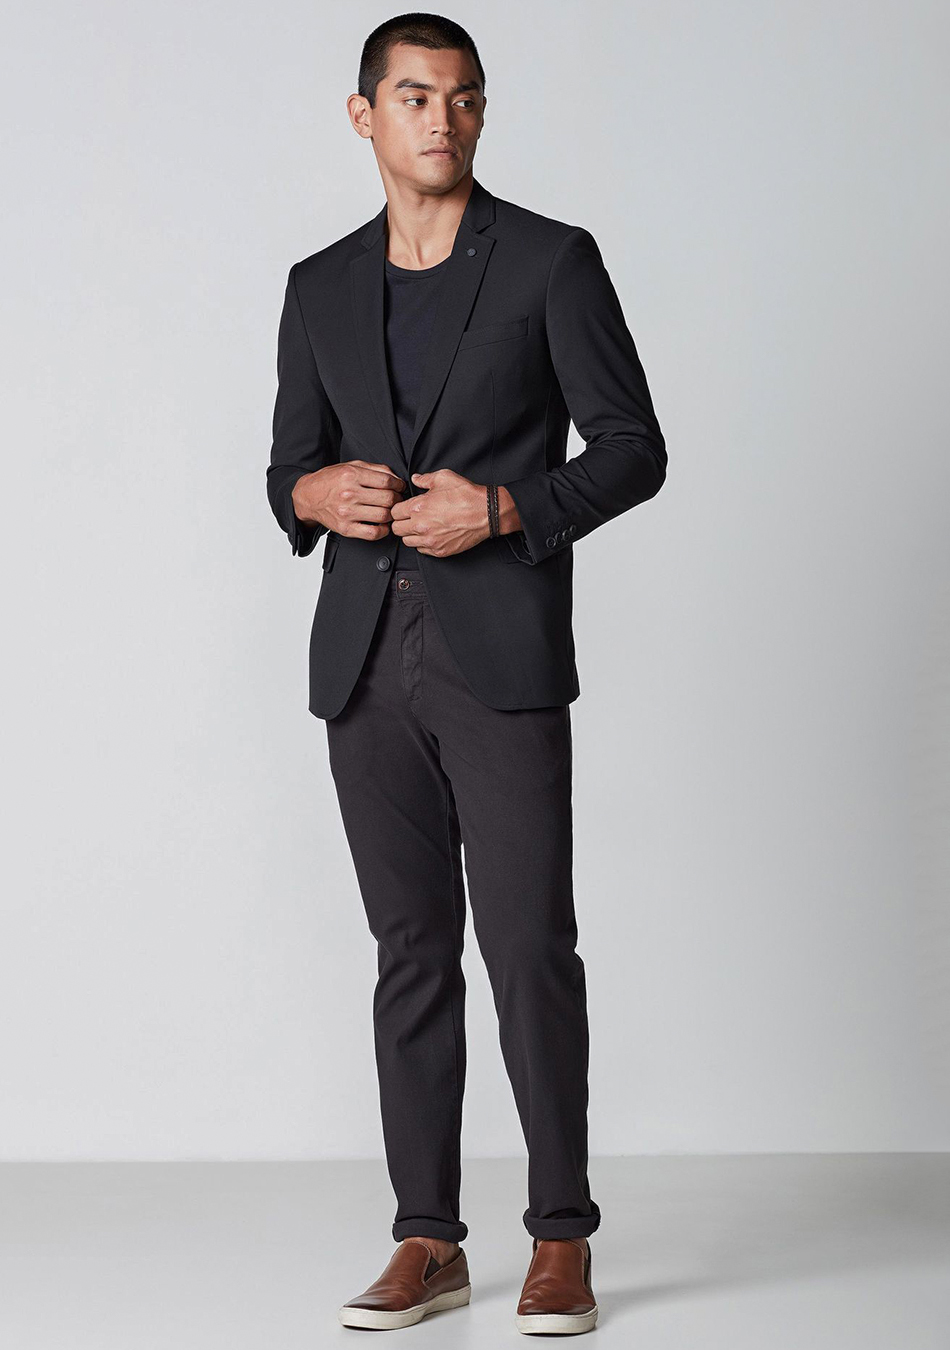 Black Tshirt Men'S Suit Slim 2 Piece Suit Business Wedding Party Jacket  Vest & Pants Coat And Suit For Men, Blue, 6X-Large : Amazon.ca: Clothing,  Shoes & Accessories